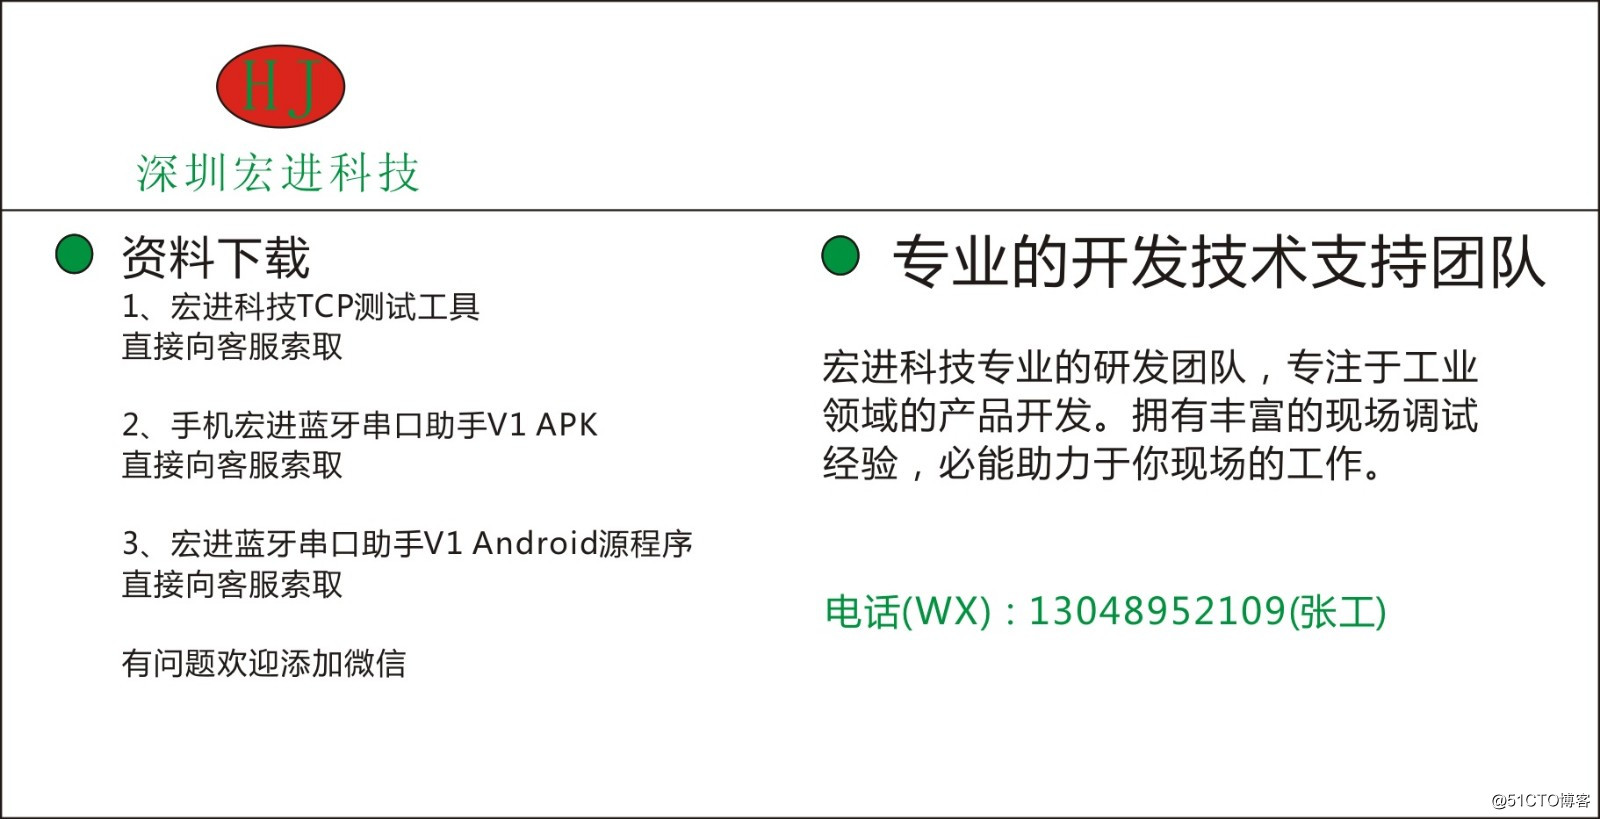 手機藍牙轉串口硬件和ANDROID的APK程序開發源代碼